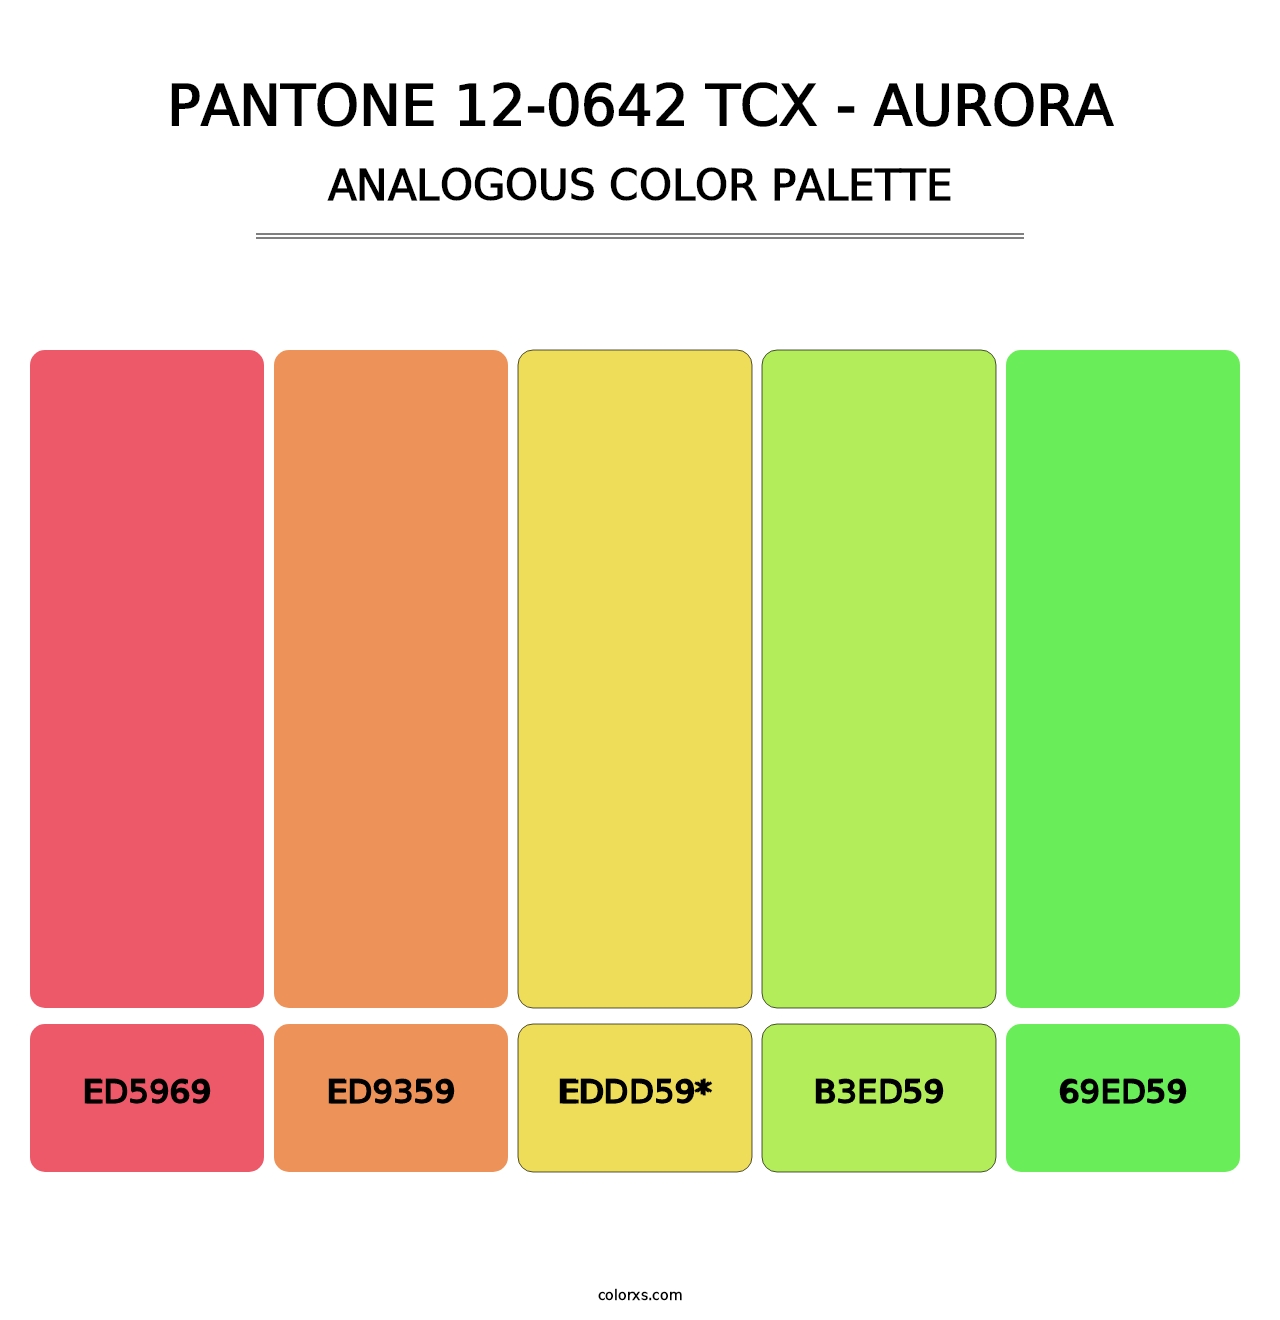 PANTONE 12-0642 TCX - Aurora - Analogous Color Palette